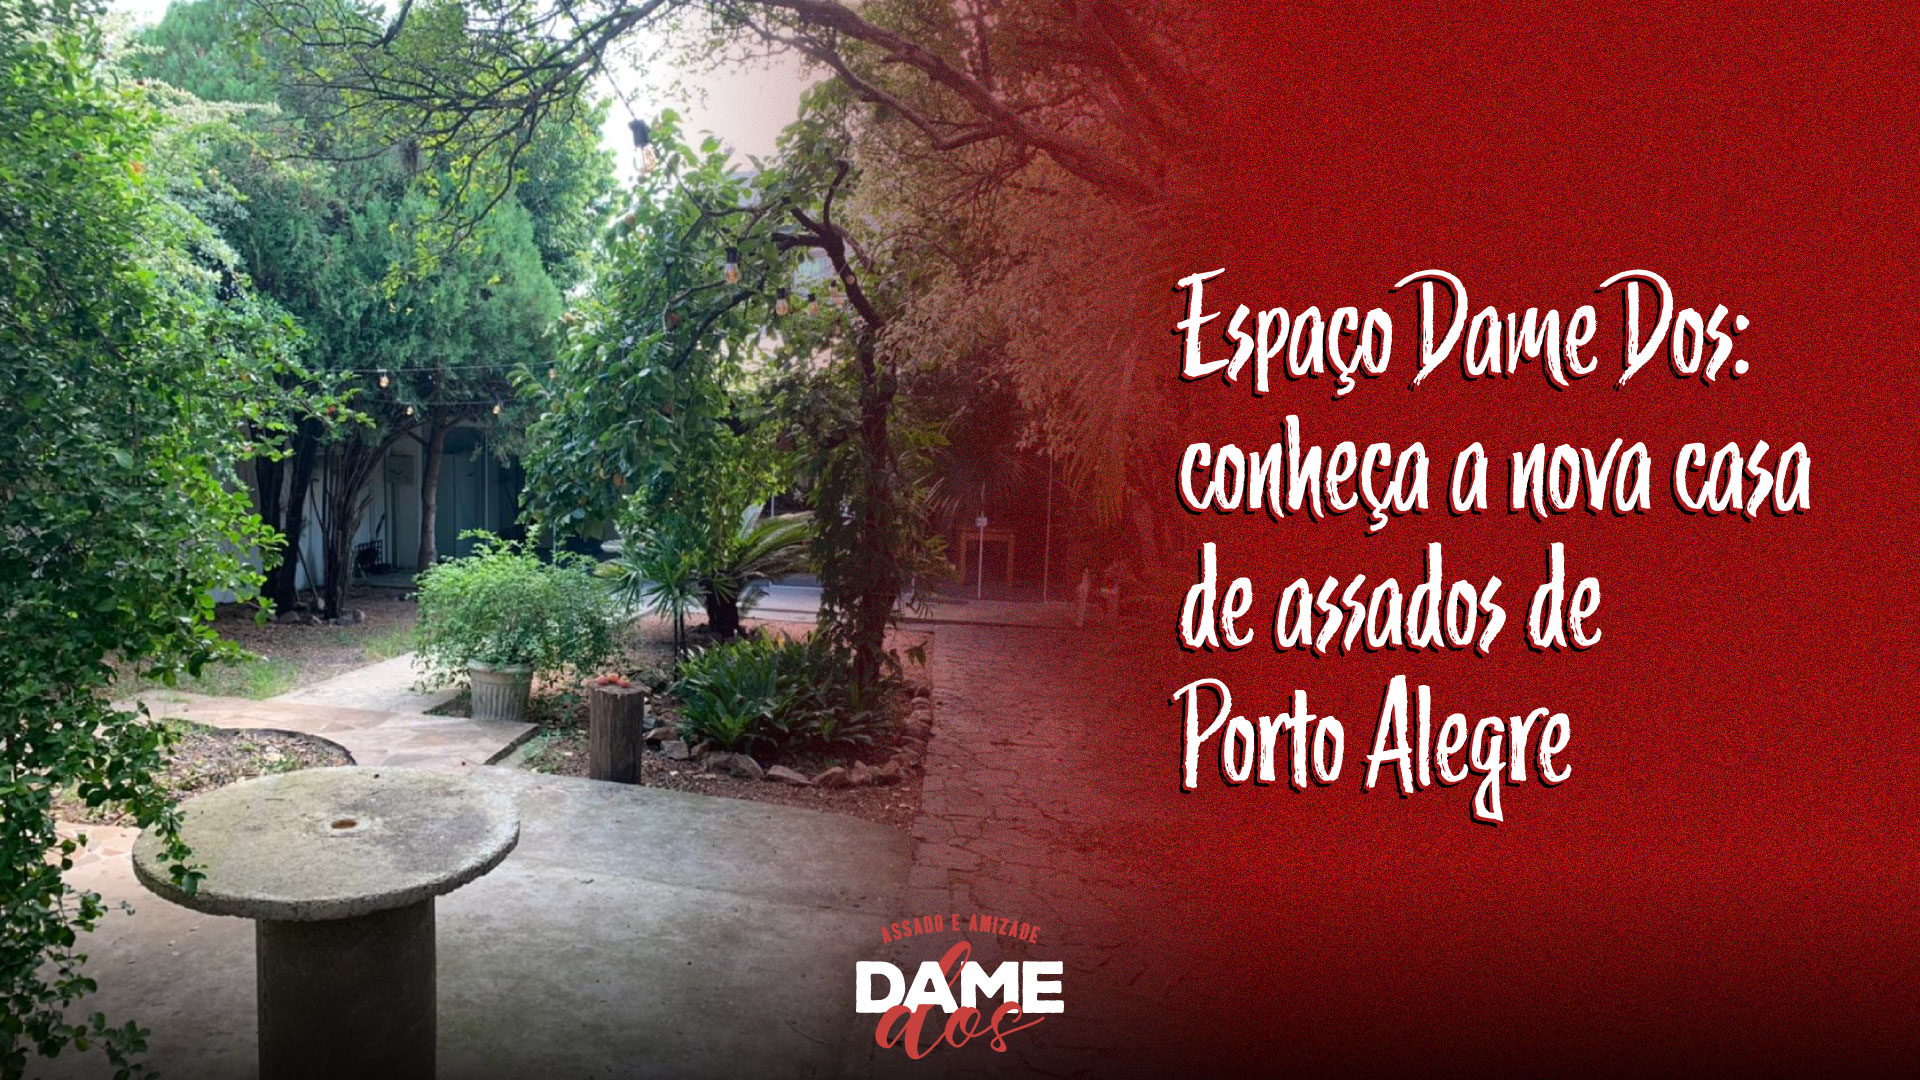 You are currently viewing Espaço Dame Dos: conheça a nova casa de assados de Porto Alegre